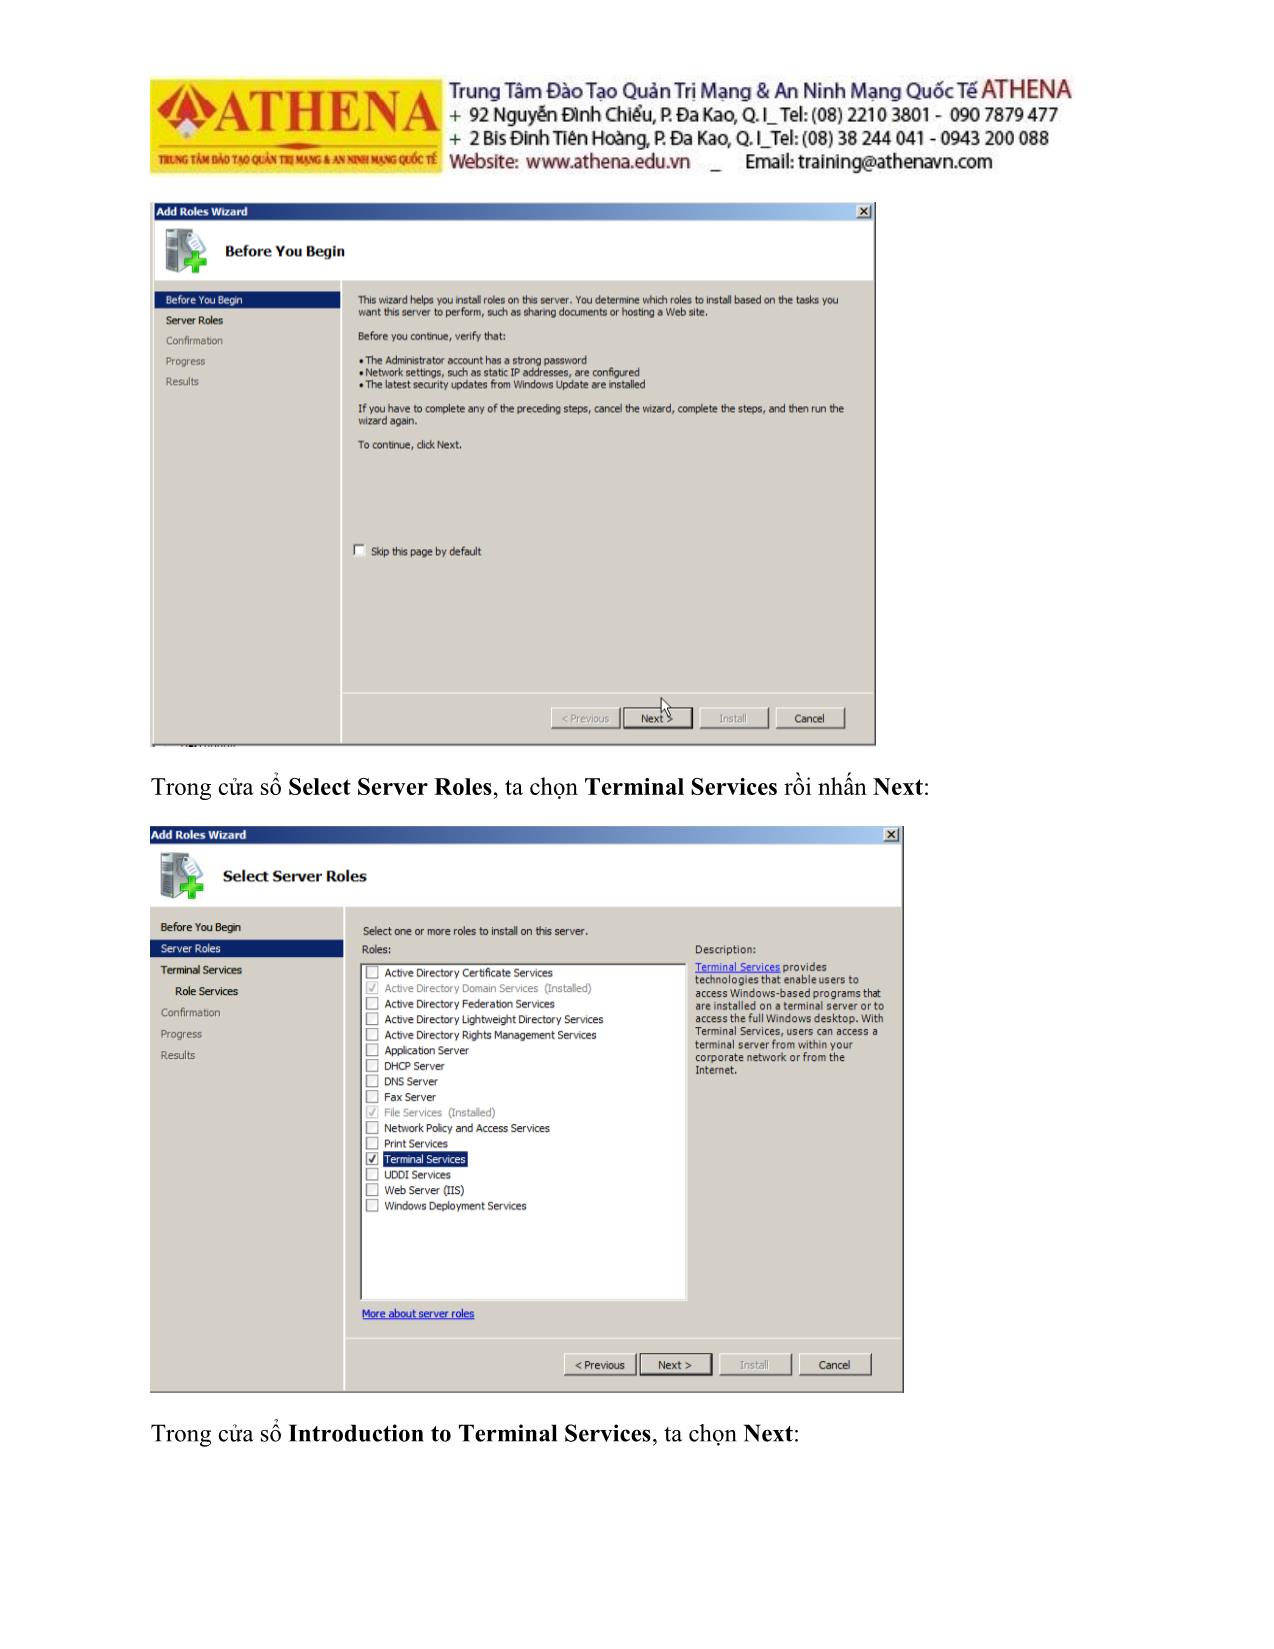 Tài liệu Hướng dẫn thực hành quản trị mạng - Remote desktop trang 10